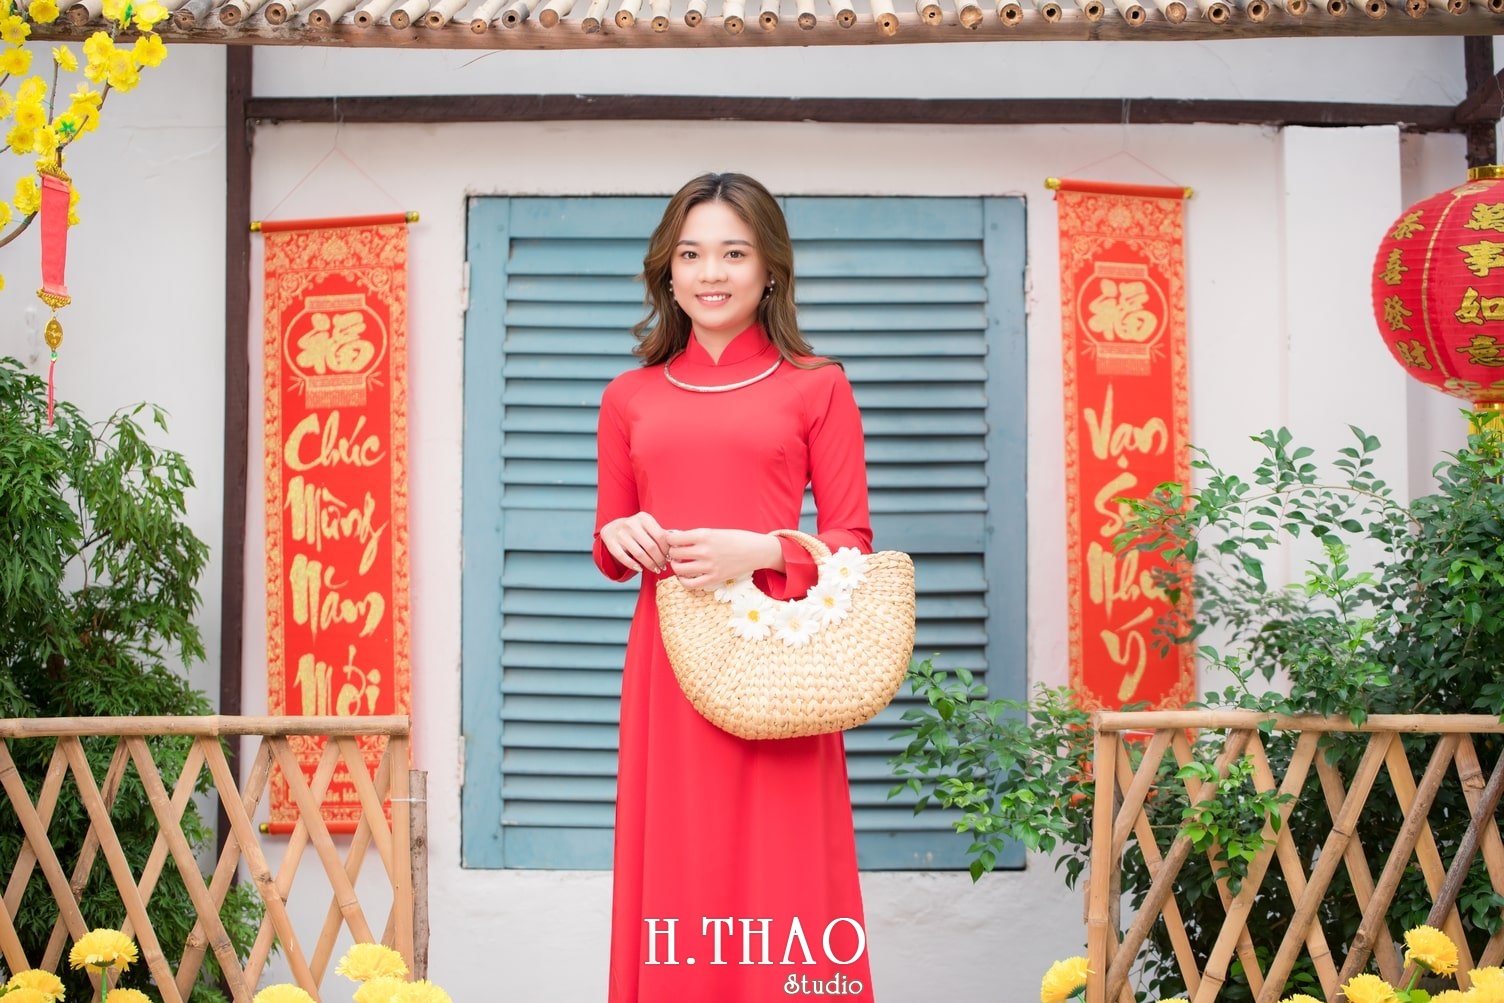 Ao dai tet do 10 - Top 40 ảnh áo dài chụp với Hoa đào, hoa mai tết tuyệt đẹp- HThao Studio